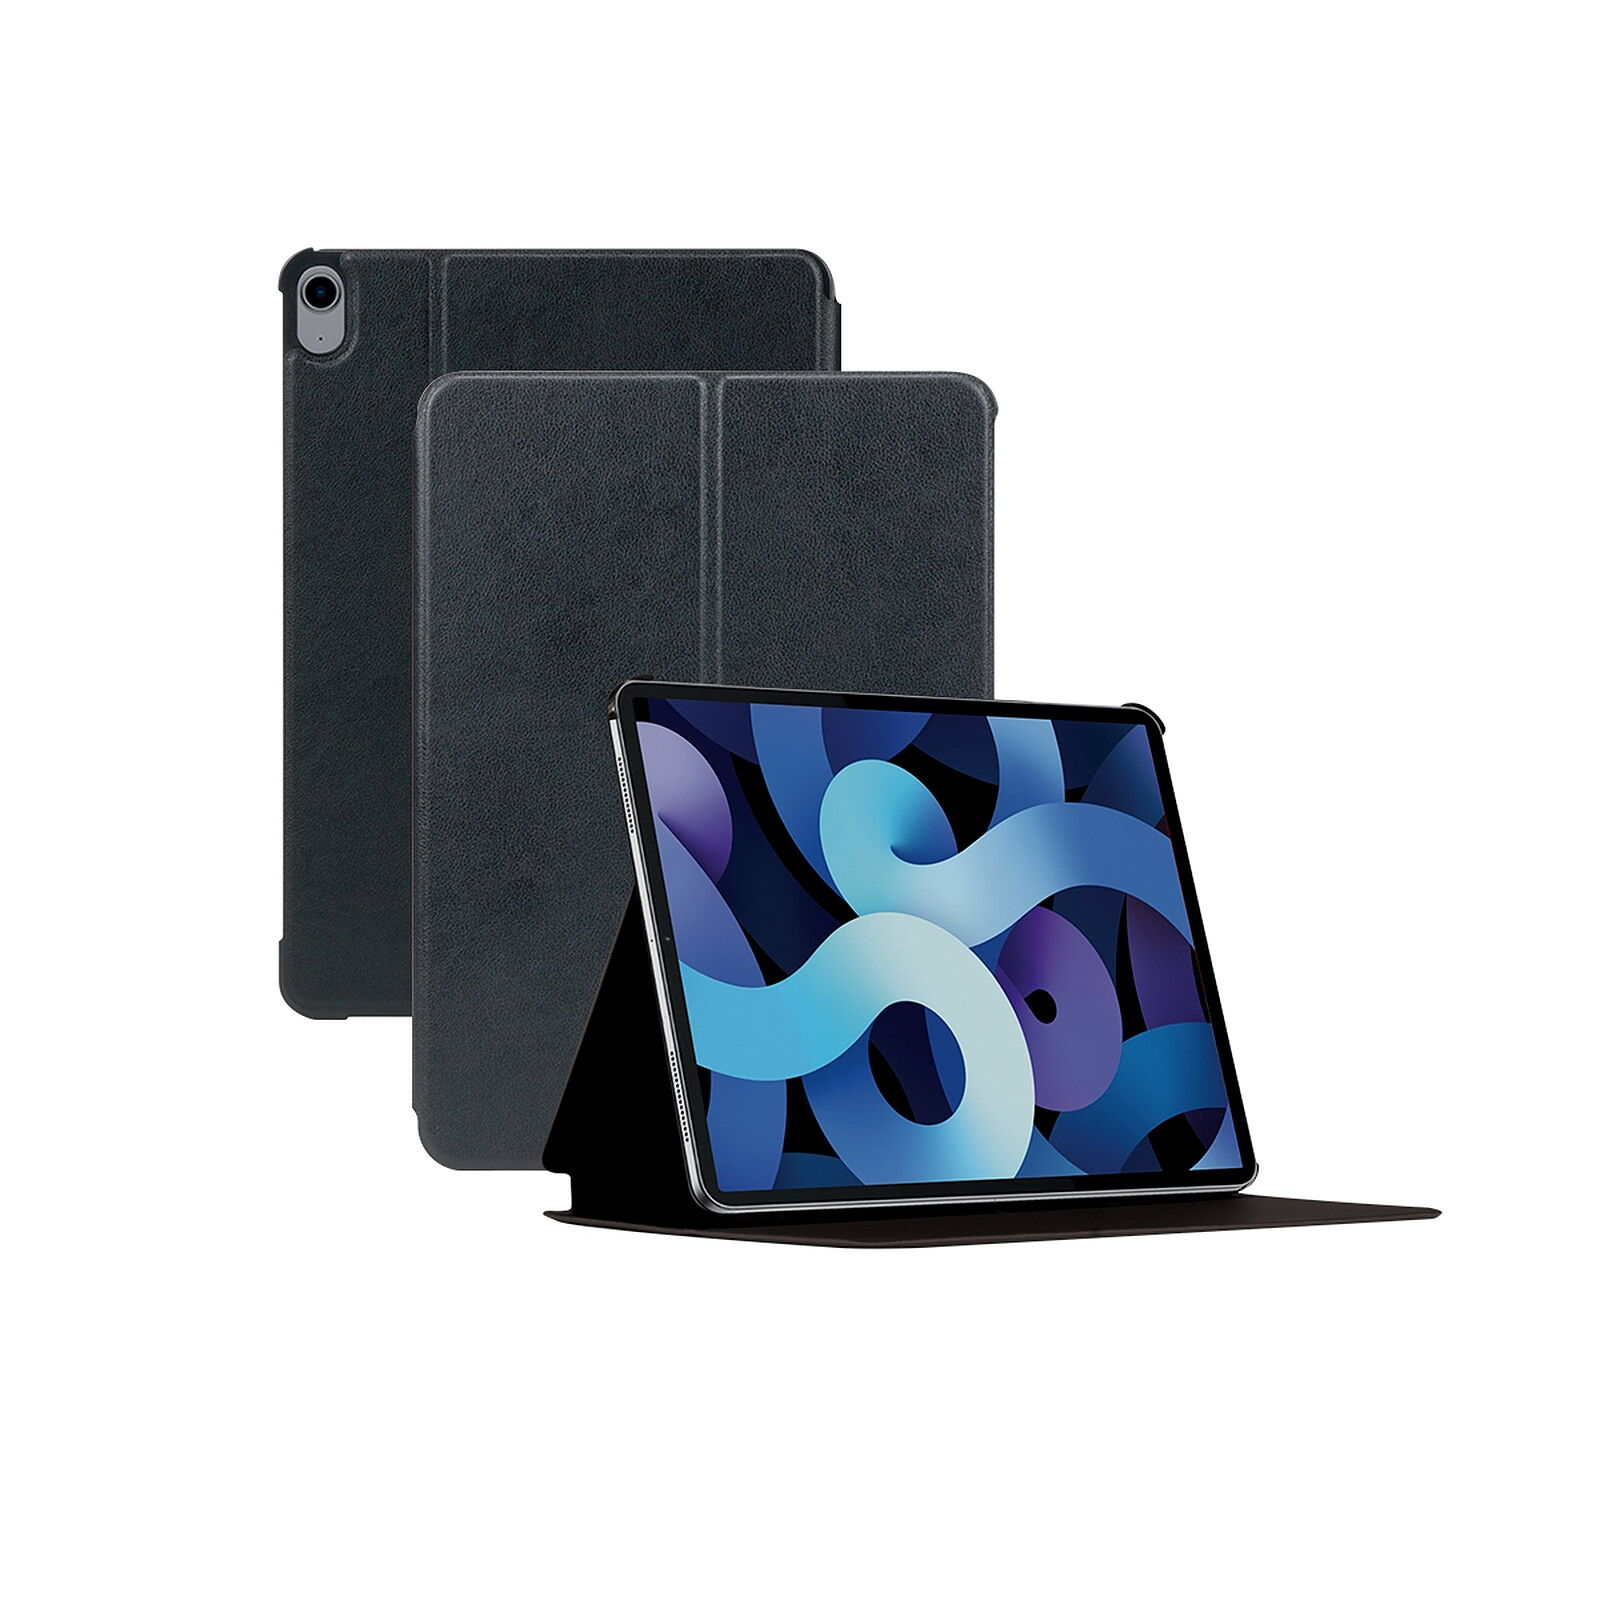 SlimShell Etui Housse Smart Case avec Support Ultra-Mince et léger avec Semi-Transparent Protecteur Fonction Sommeil/Réveil Automatique Rouge Fintie Coque pour iPad Air 2 2014 / iPad Air 2013 